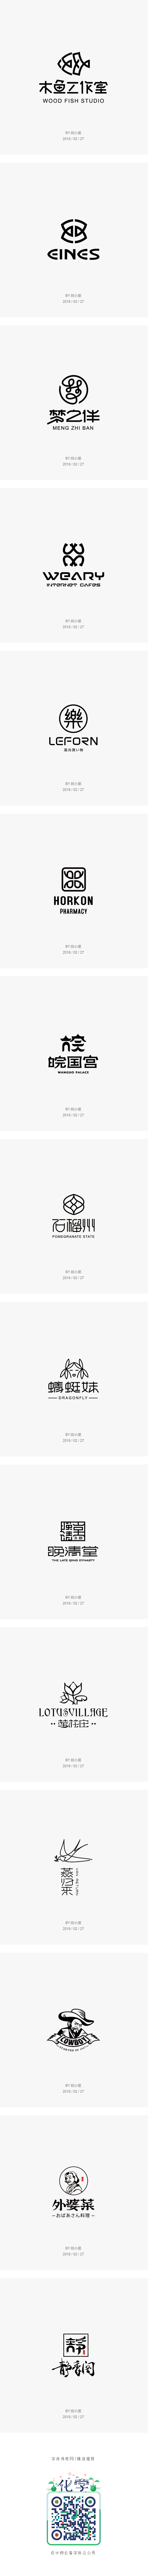 贰零壹捌 / logo集合「二月」-字体...